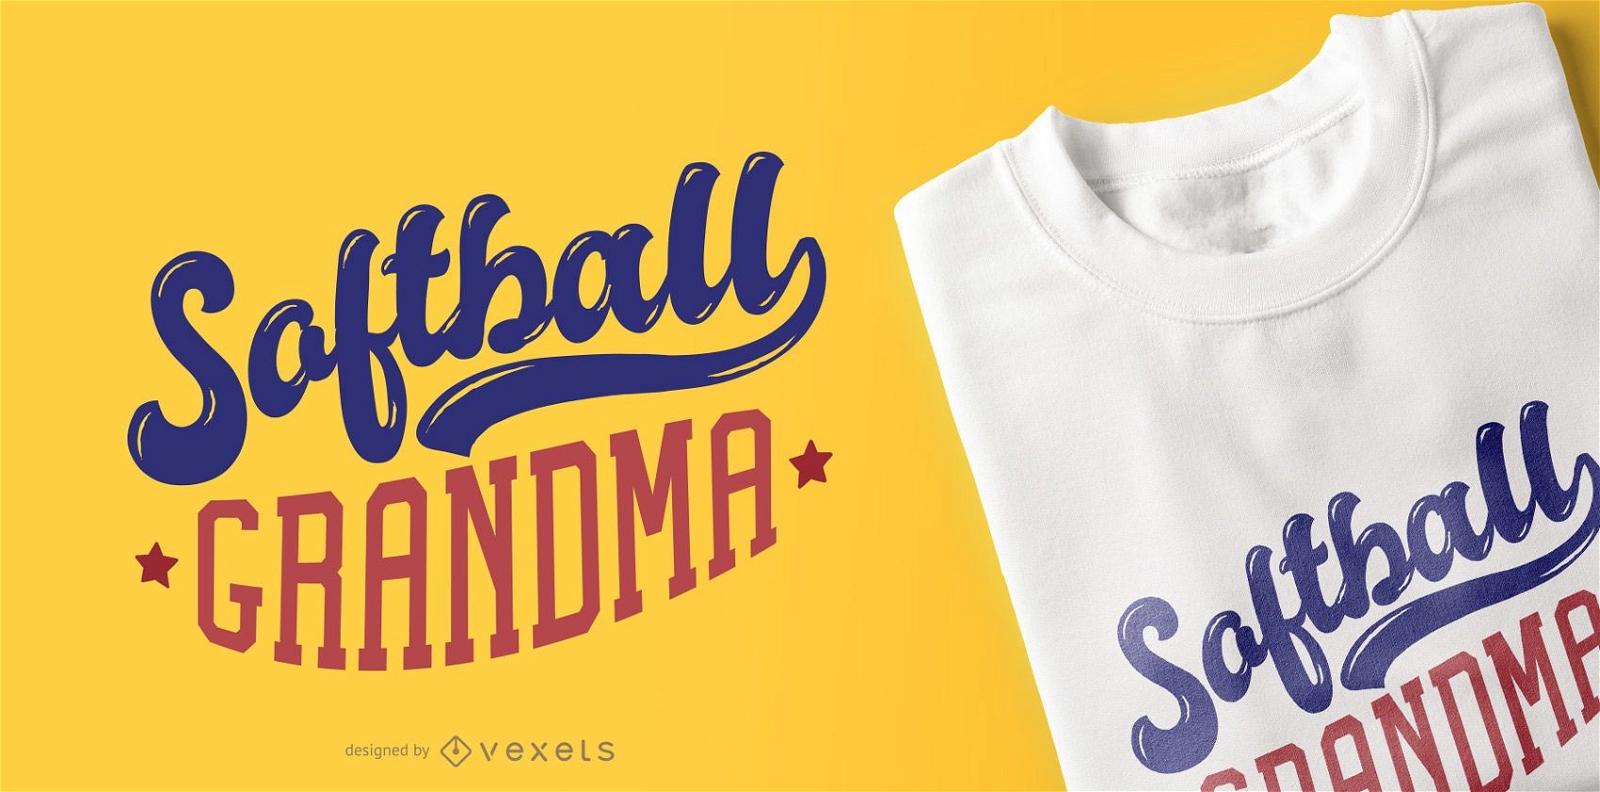 Dise?o de camiseta Softball Grandma